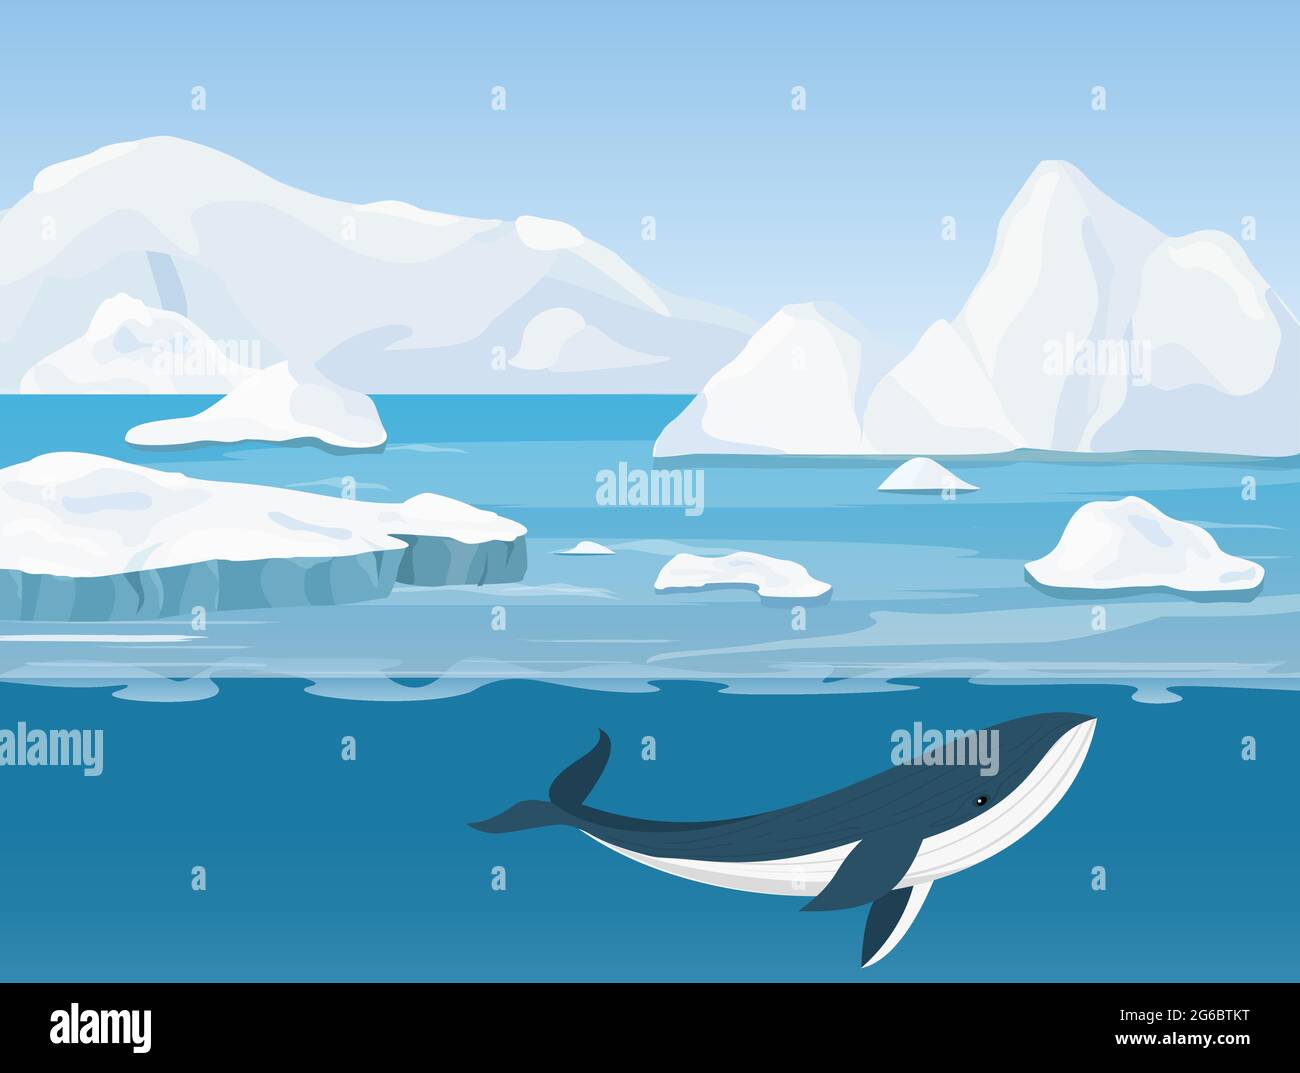 Illustration vectorielle du magnifique paysage arctique de la vie du nord et de l'Antarctique. Icebergs dans l'océan et le monde sous-marin avec baleine dans un dessin animé plat Illustration de Vecteur